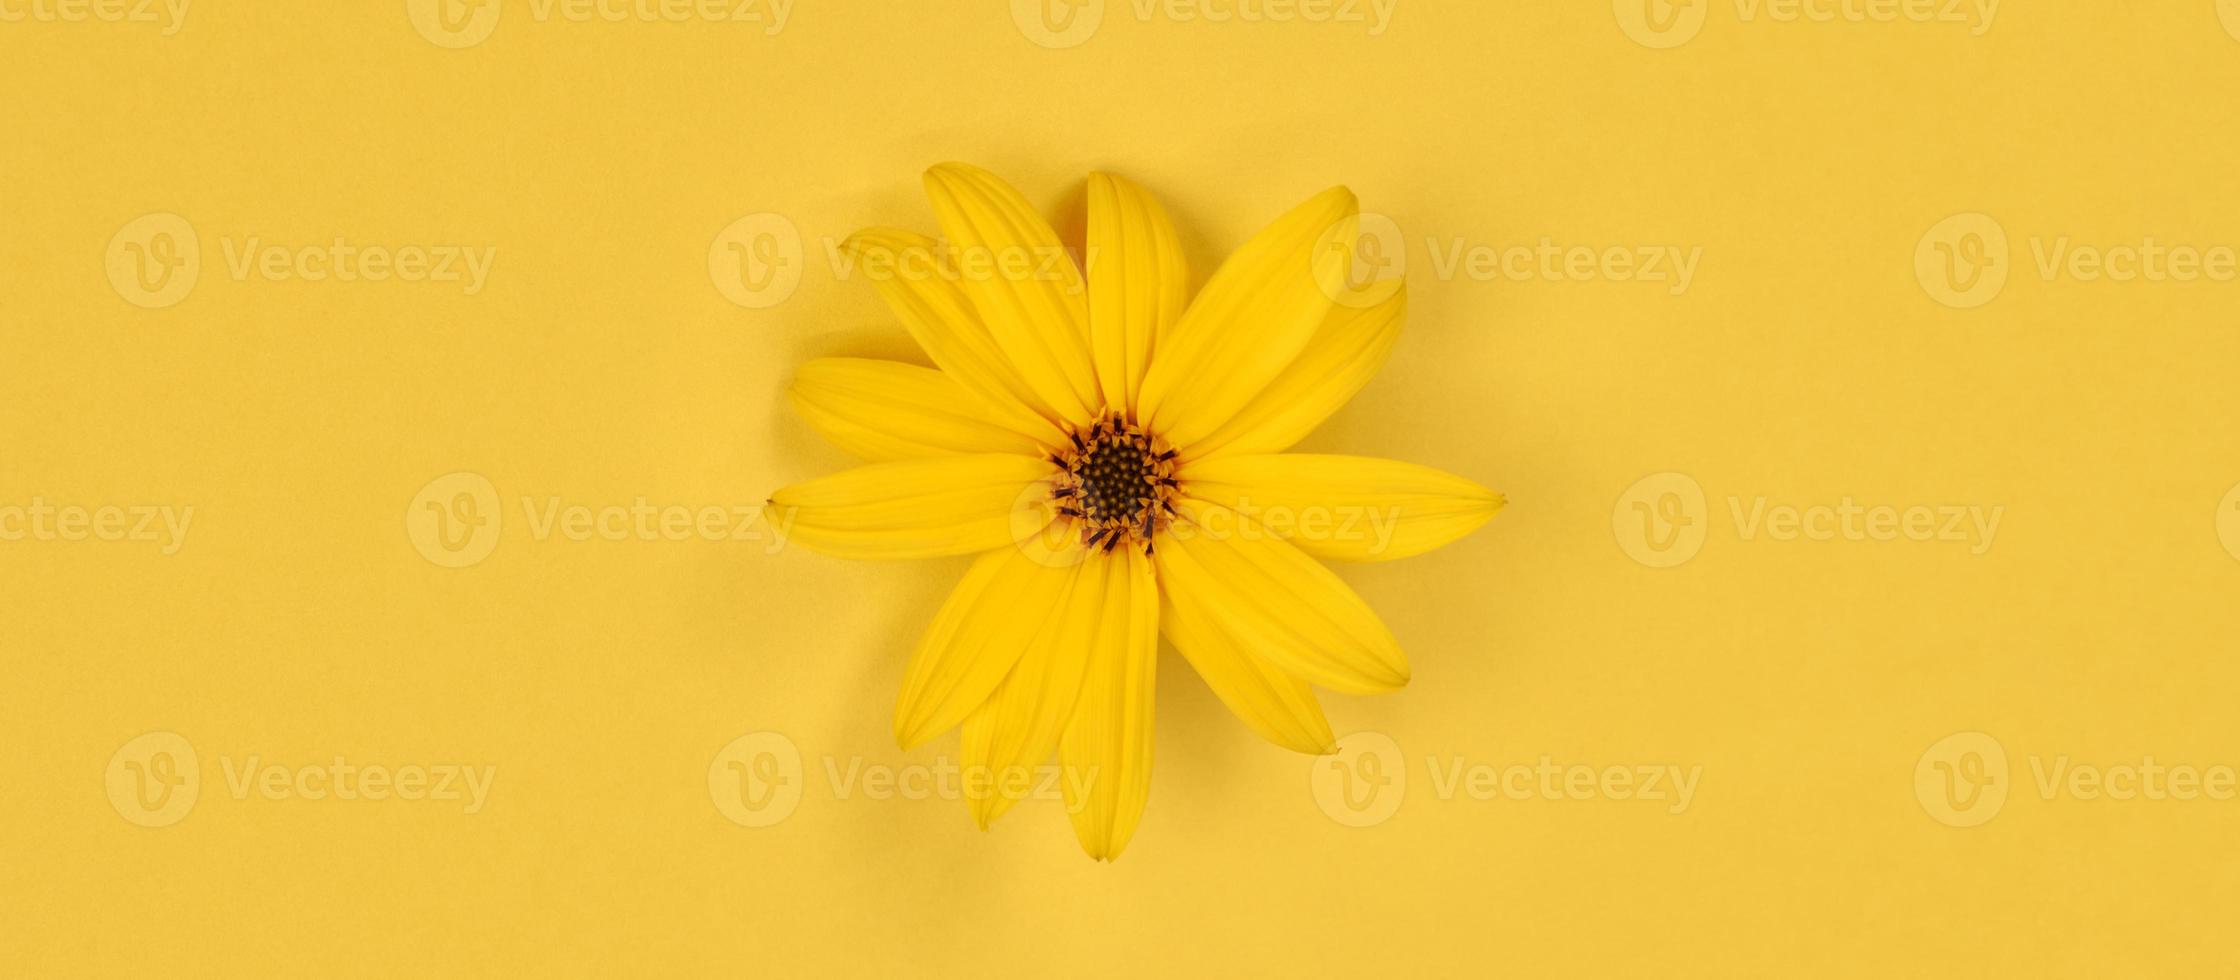 en gul blomknopp av topinambur på gul bakgrund, ovanifrån platt låg, enda vild solros foto